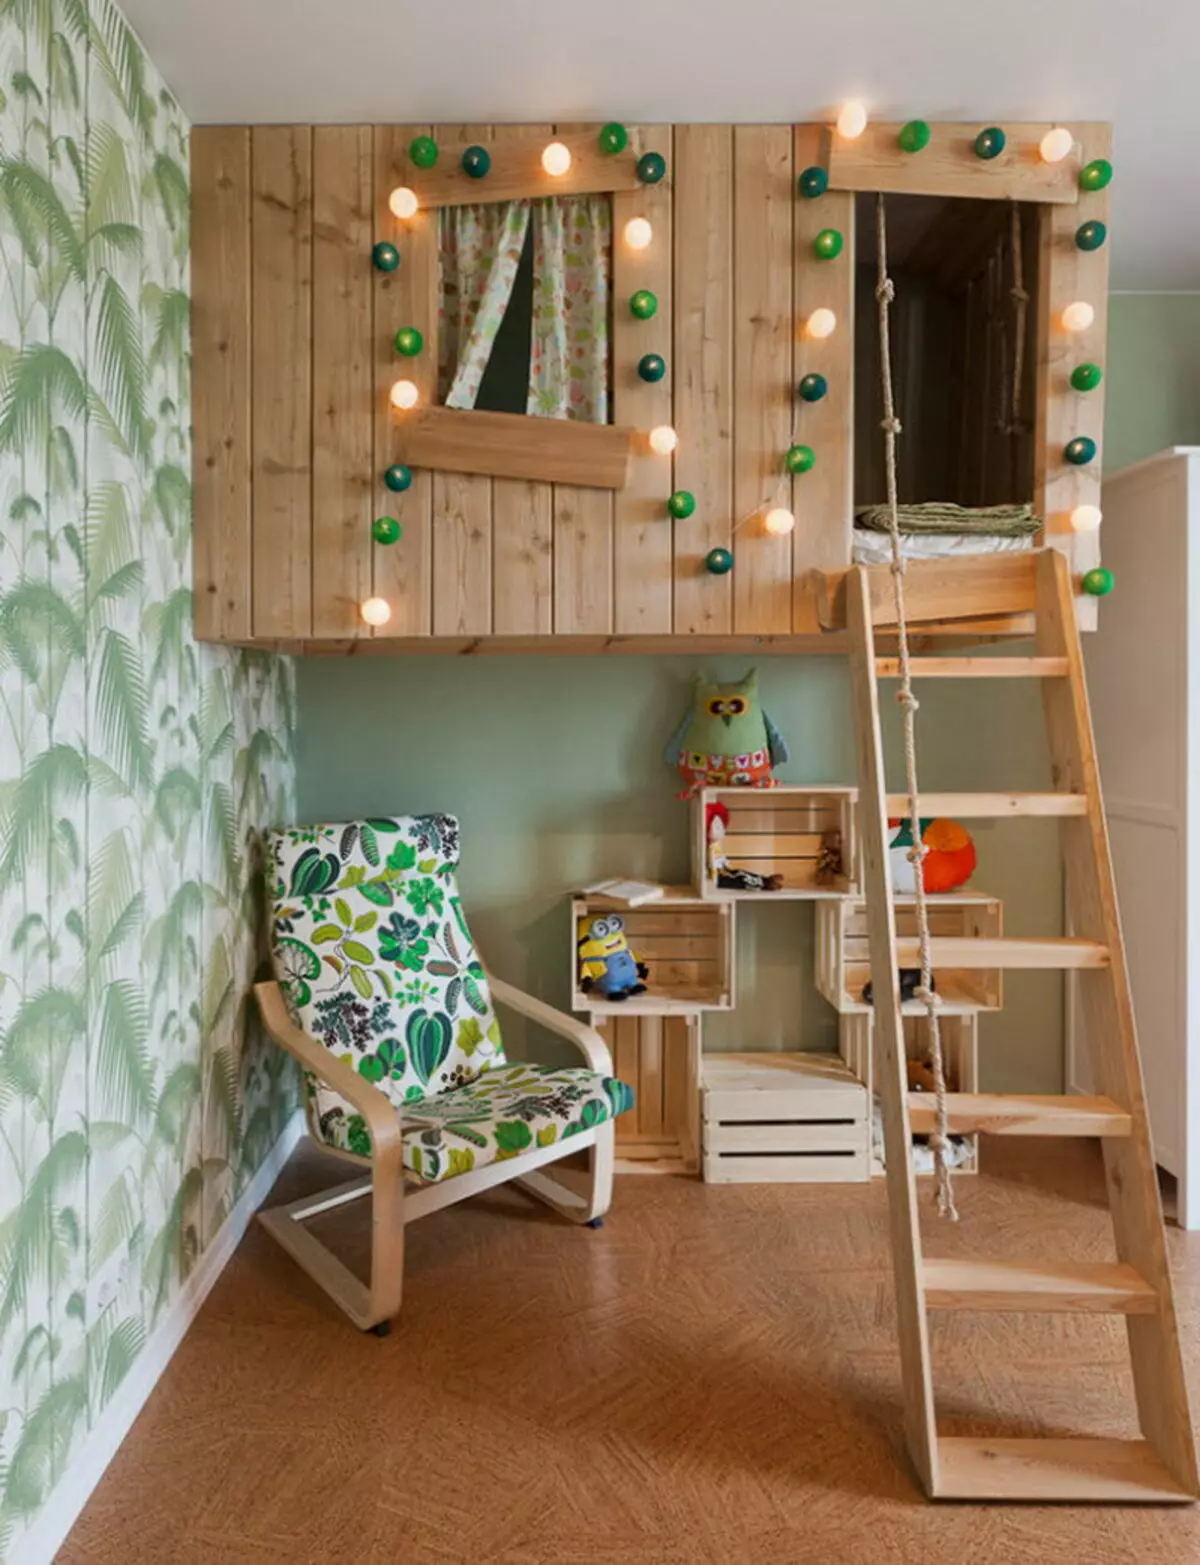 Kuća na drvetu za dijete u sobi: je li moguće? I kako?